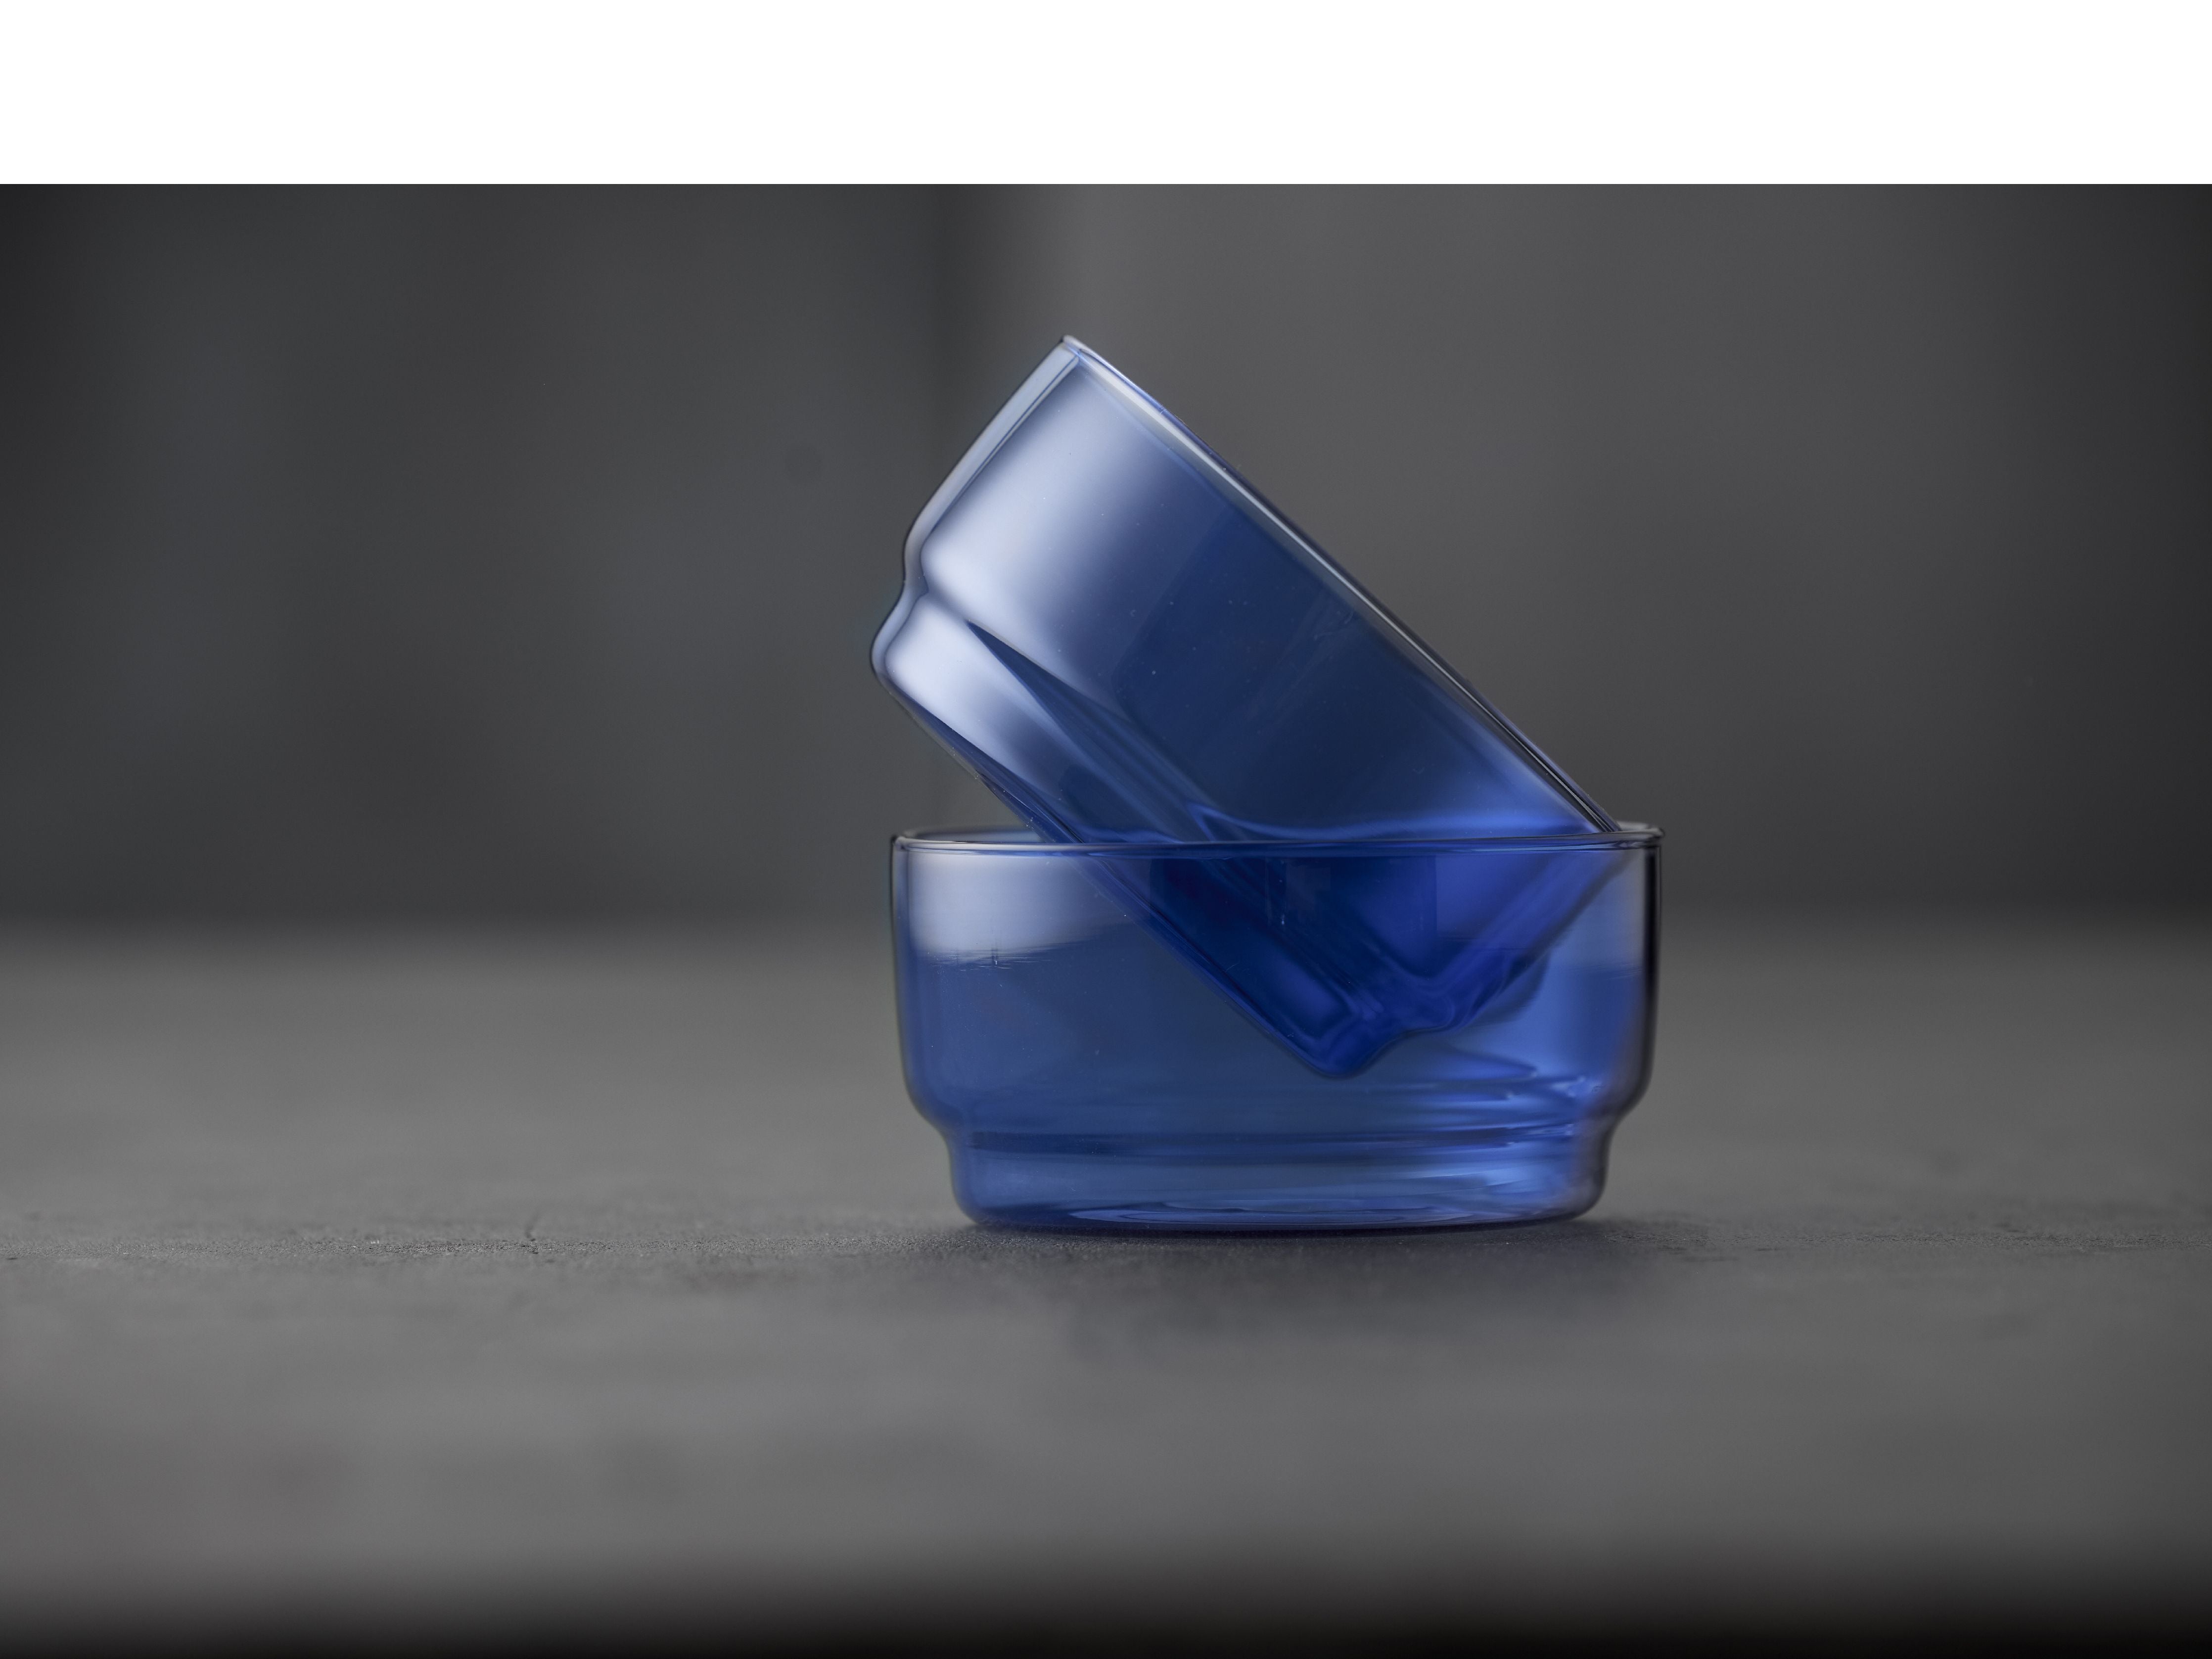 Lyngby Glas Torino Bowl 12 cm 2 Stcs., Blau